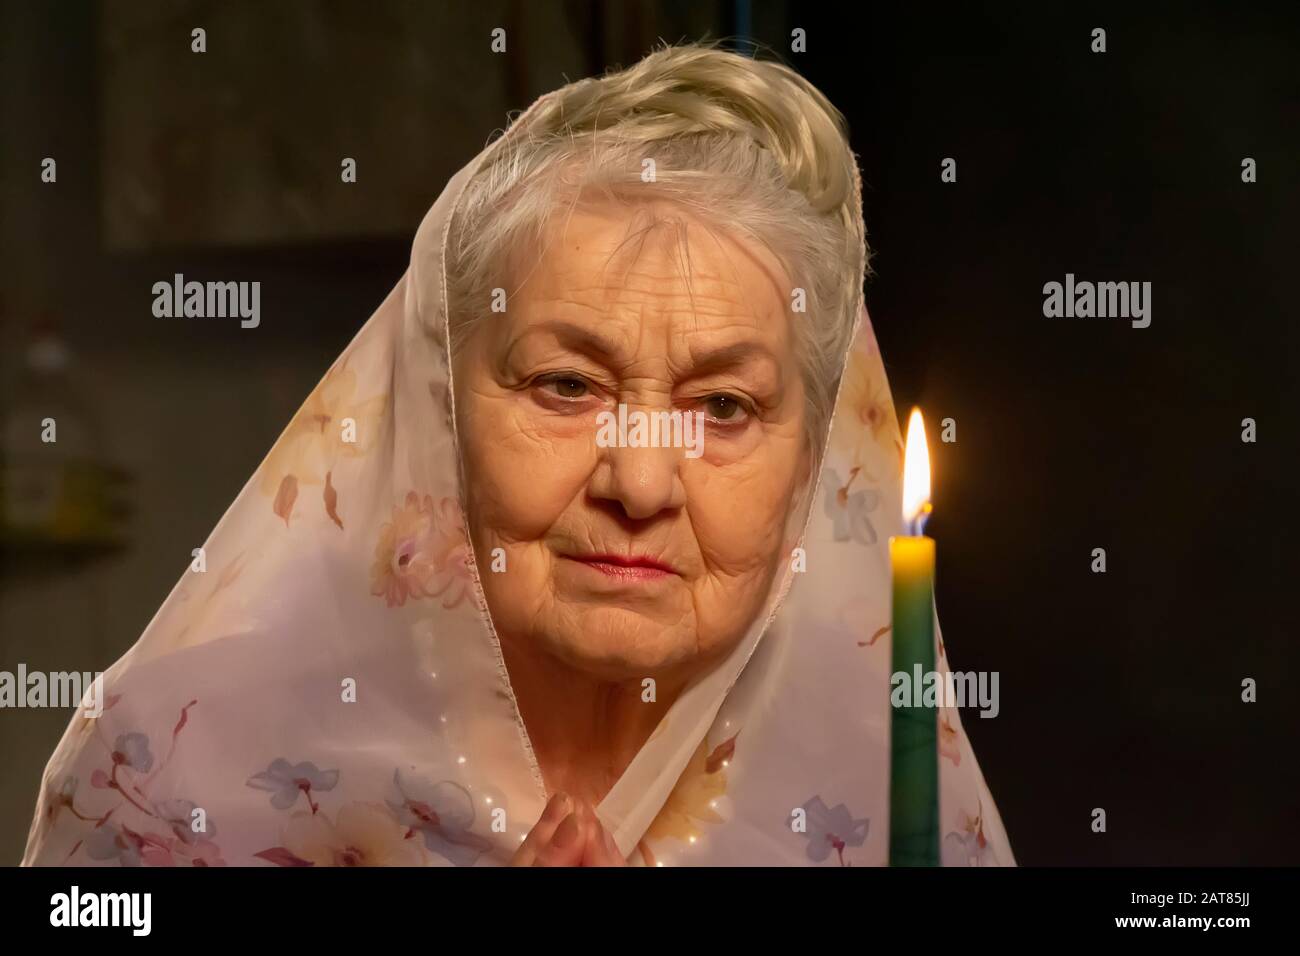 Une femme âgée dans un foulard regarde une bougie.Une femme âgée regarde une bougie. La vieille femme priait. Banque D'Images